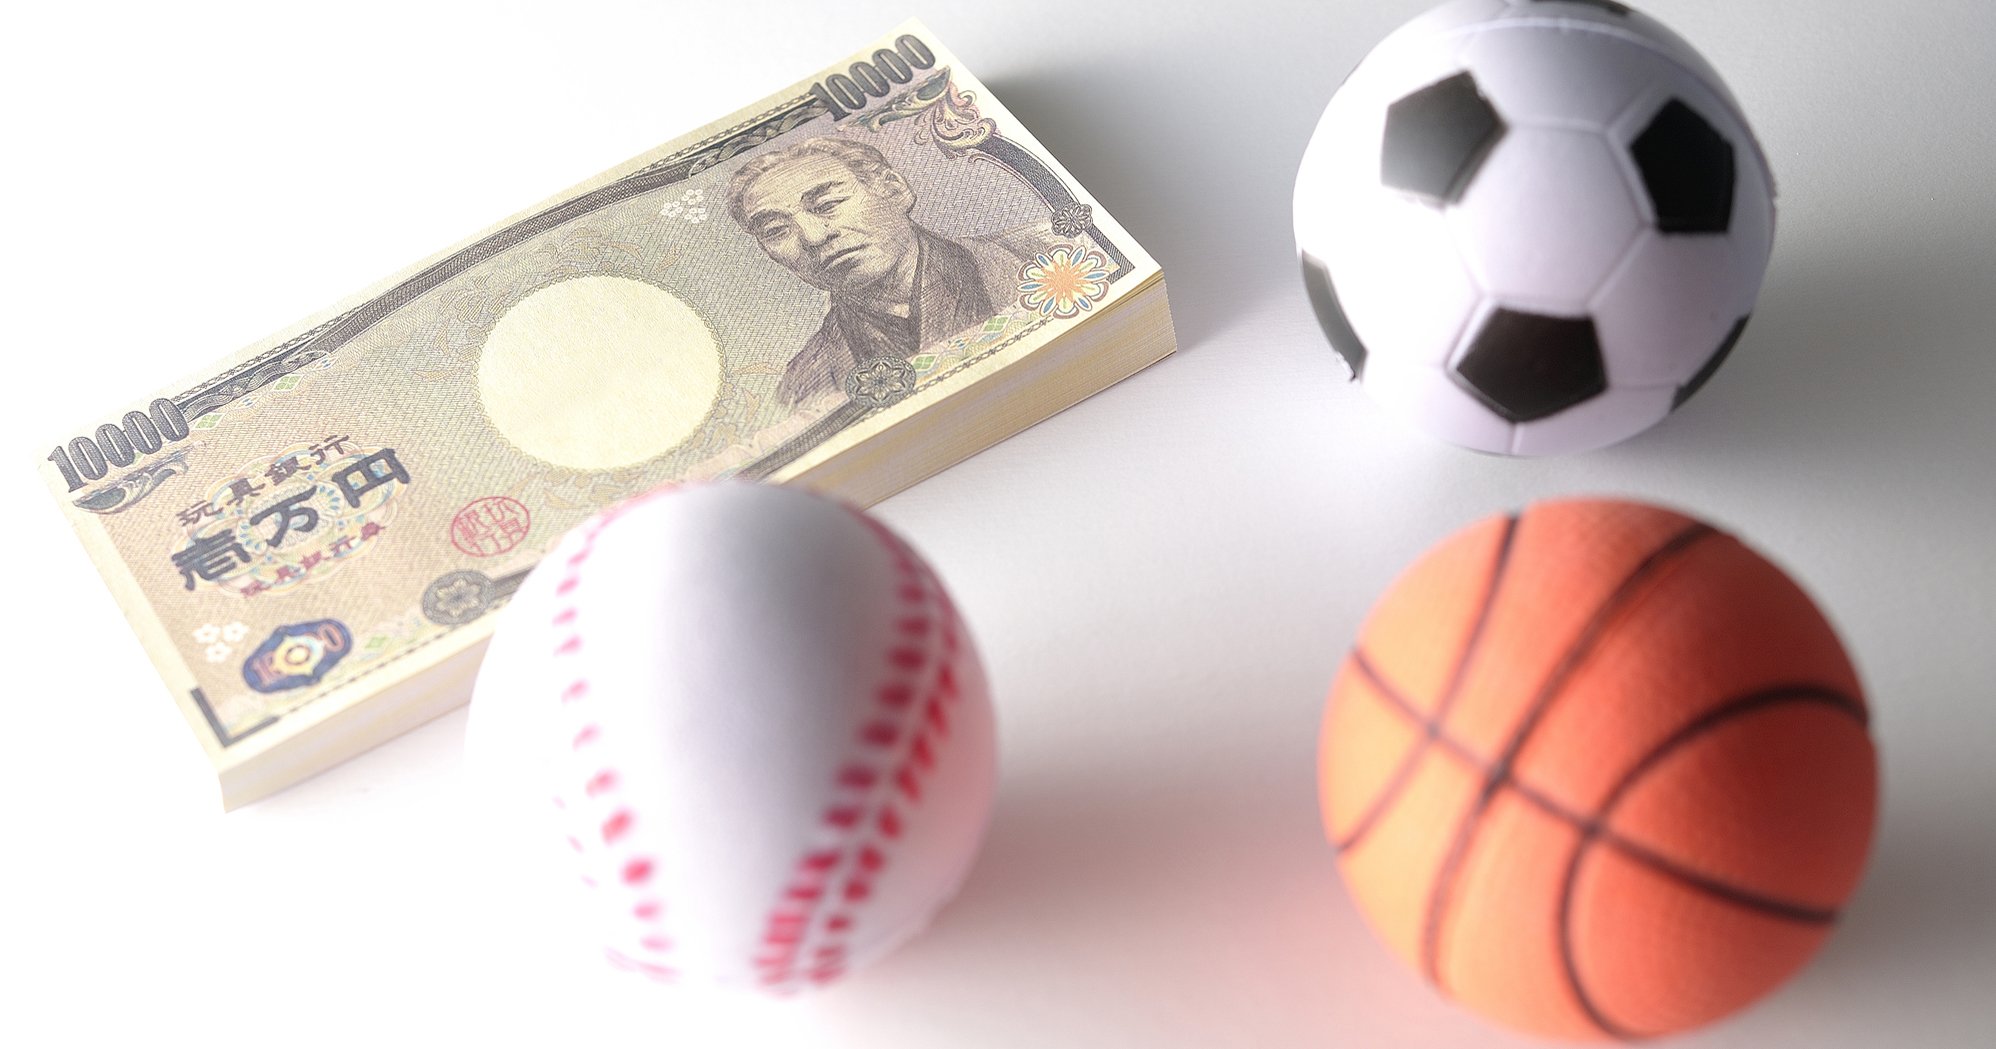 スポーツ賭博 が 日本で野球人気復活の救世主になりそうな理由 ニュース3面鏡 ダイヤモンド オンライン